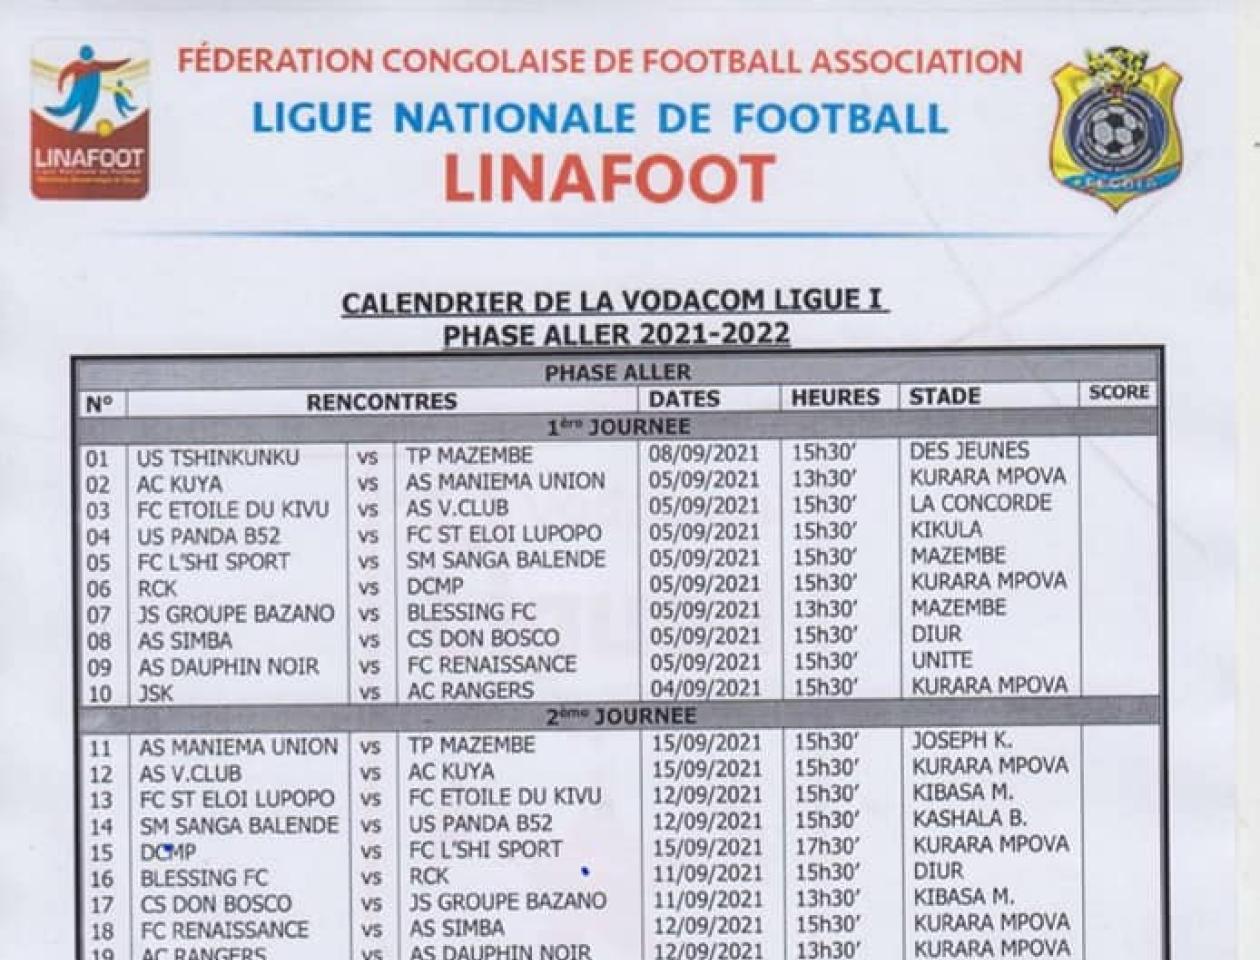 Calendrier de la Linafoot saison 2021-2022